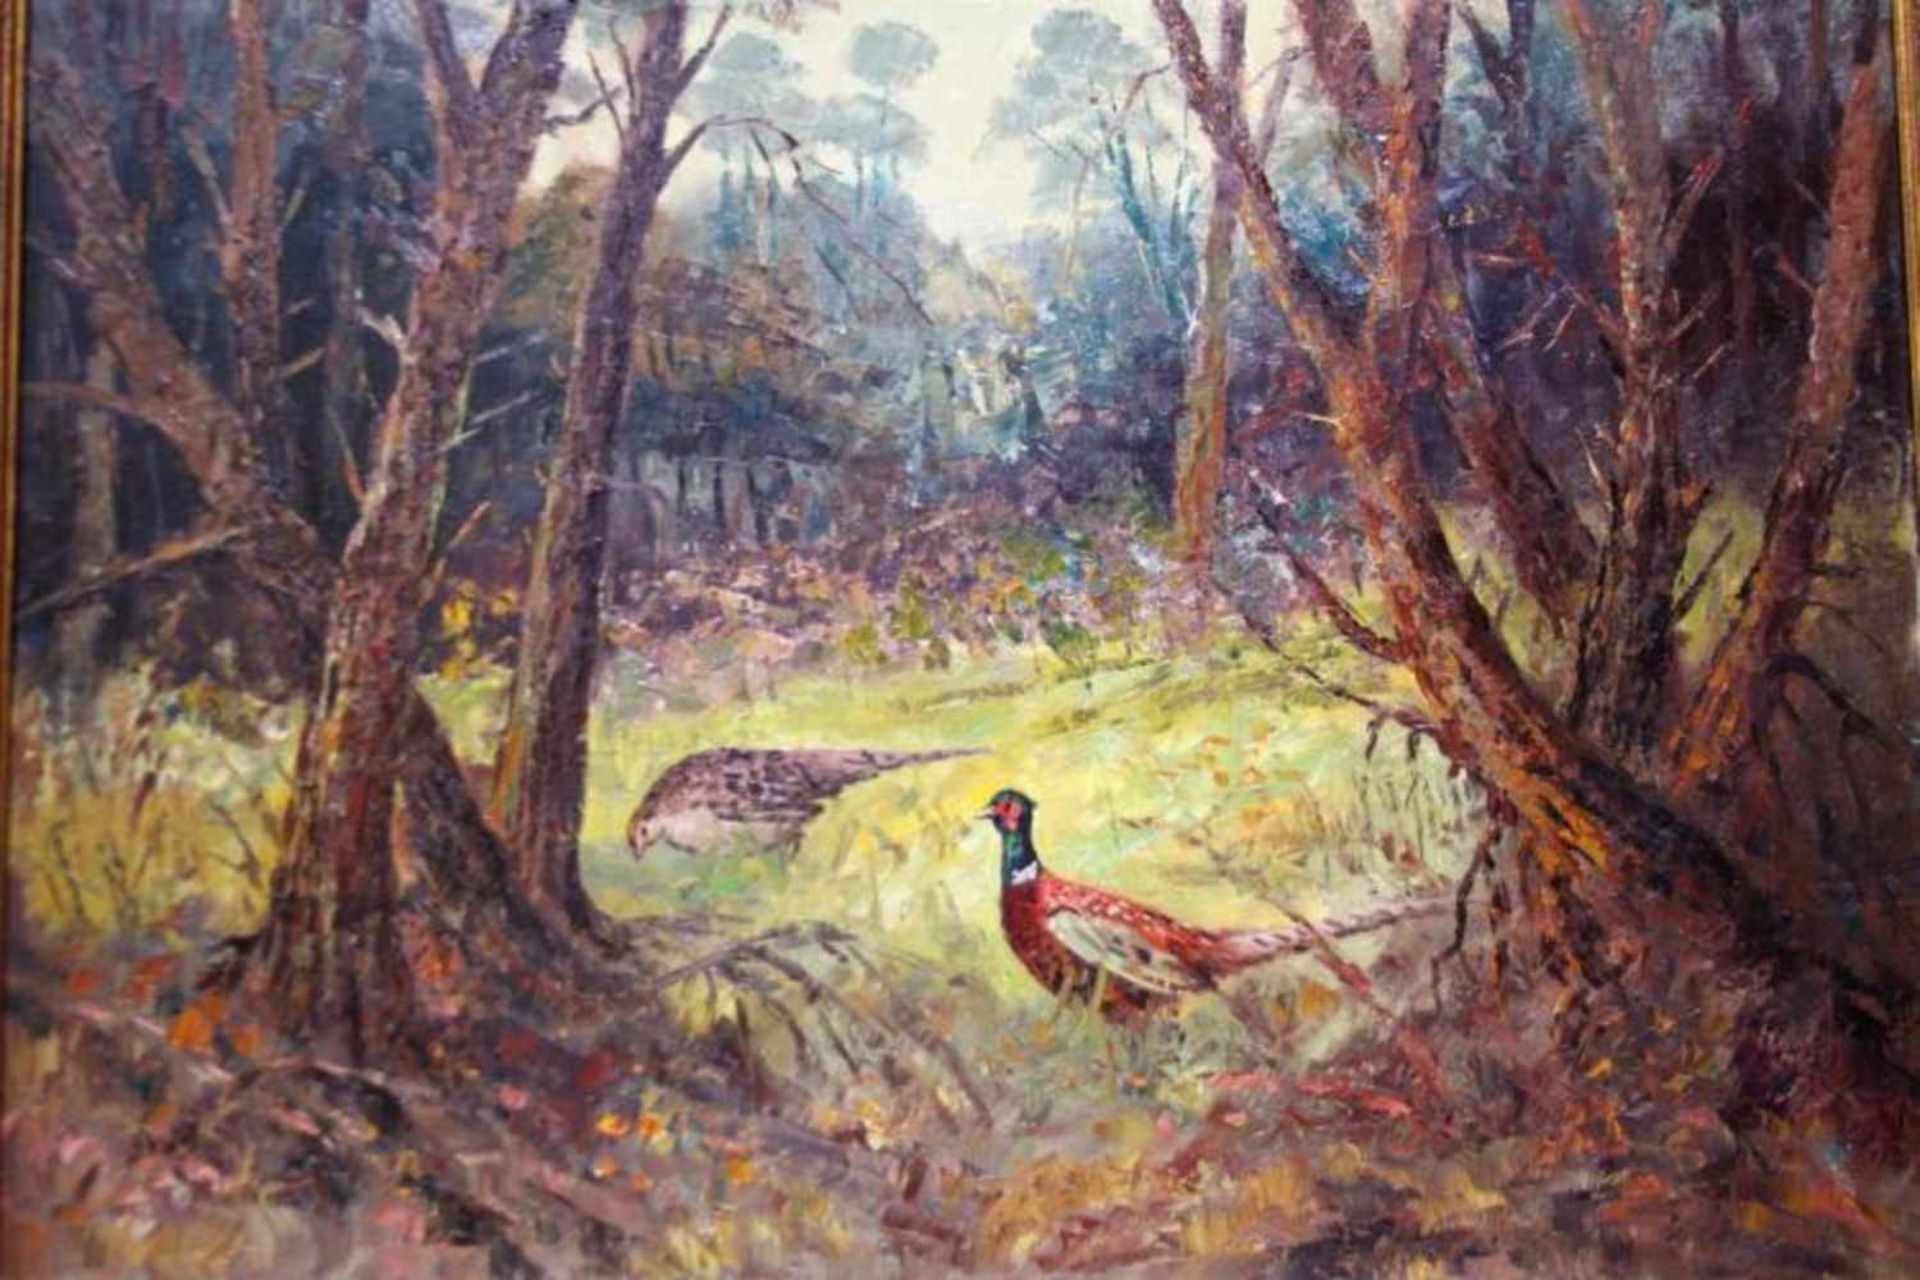 J. Koning 'Fazanten in het bos' schilderij op doek, 60x80cm. (Classical painting, signed, canvas)